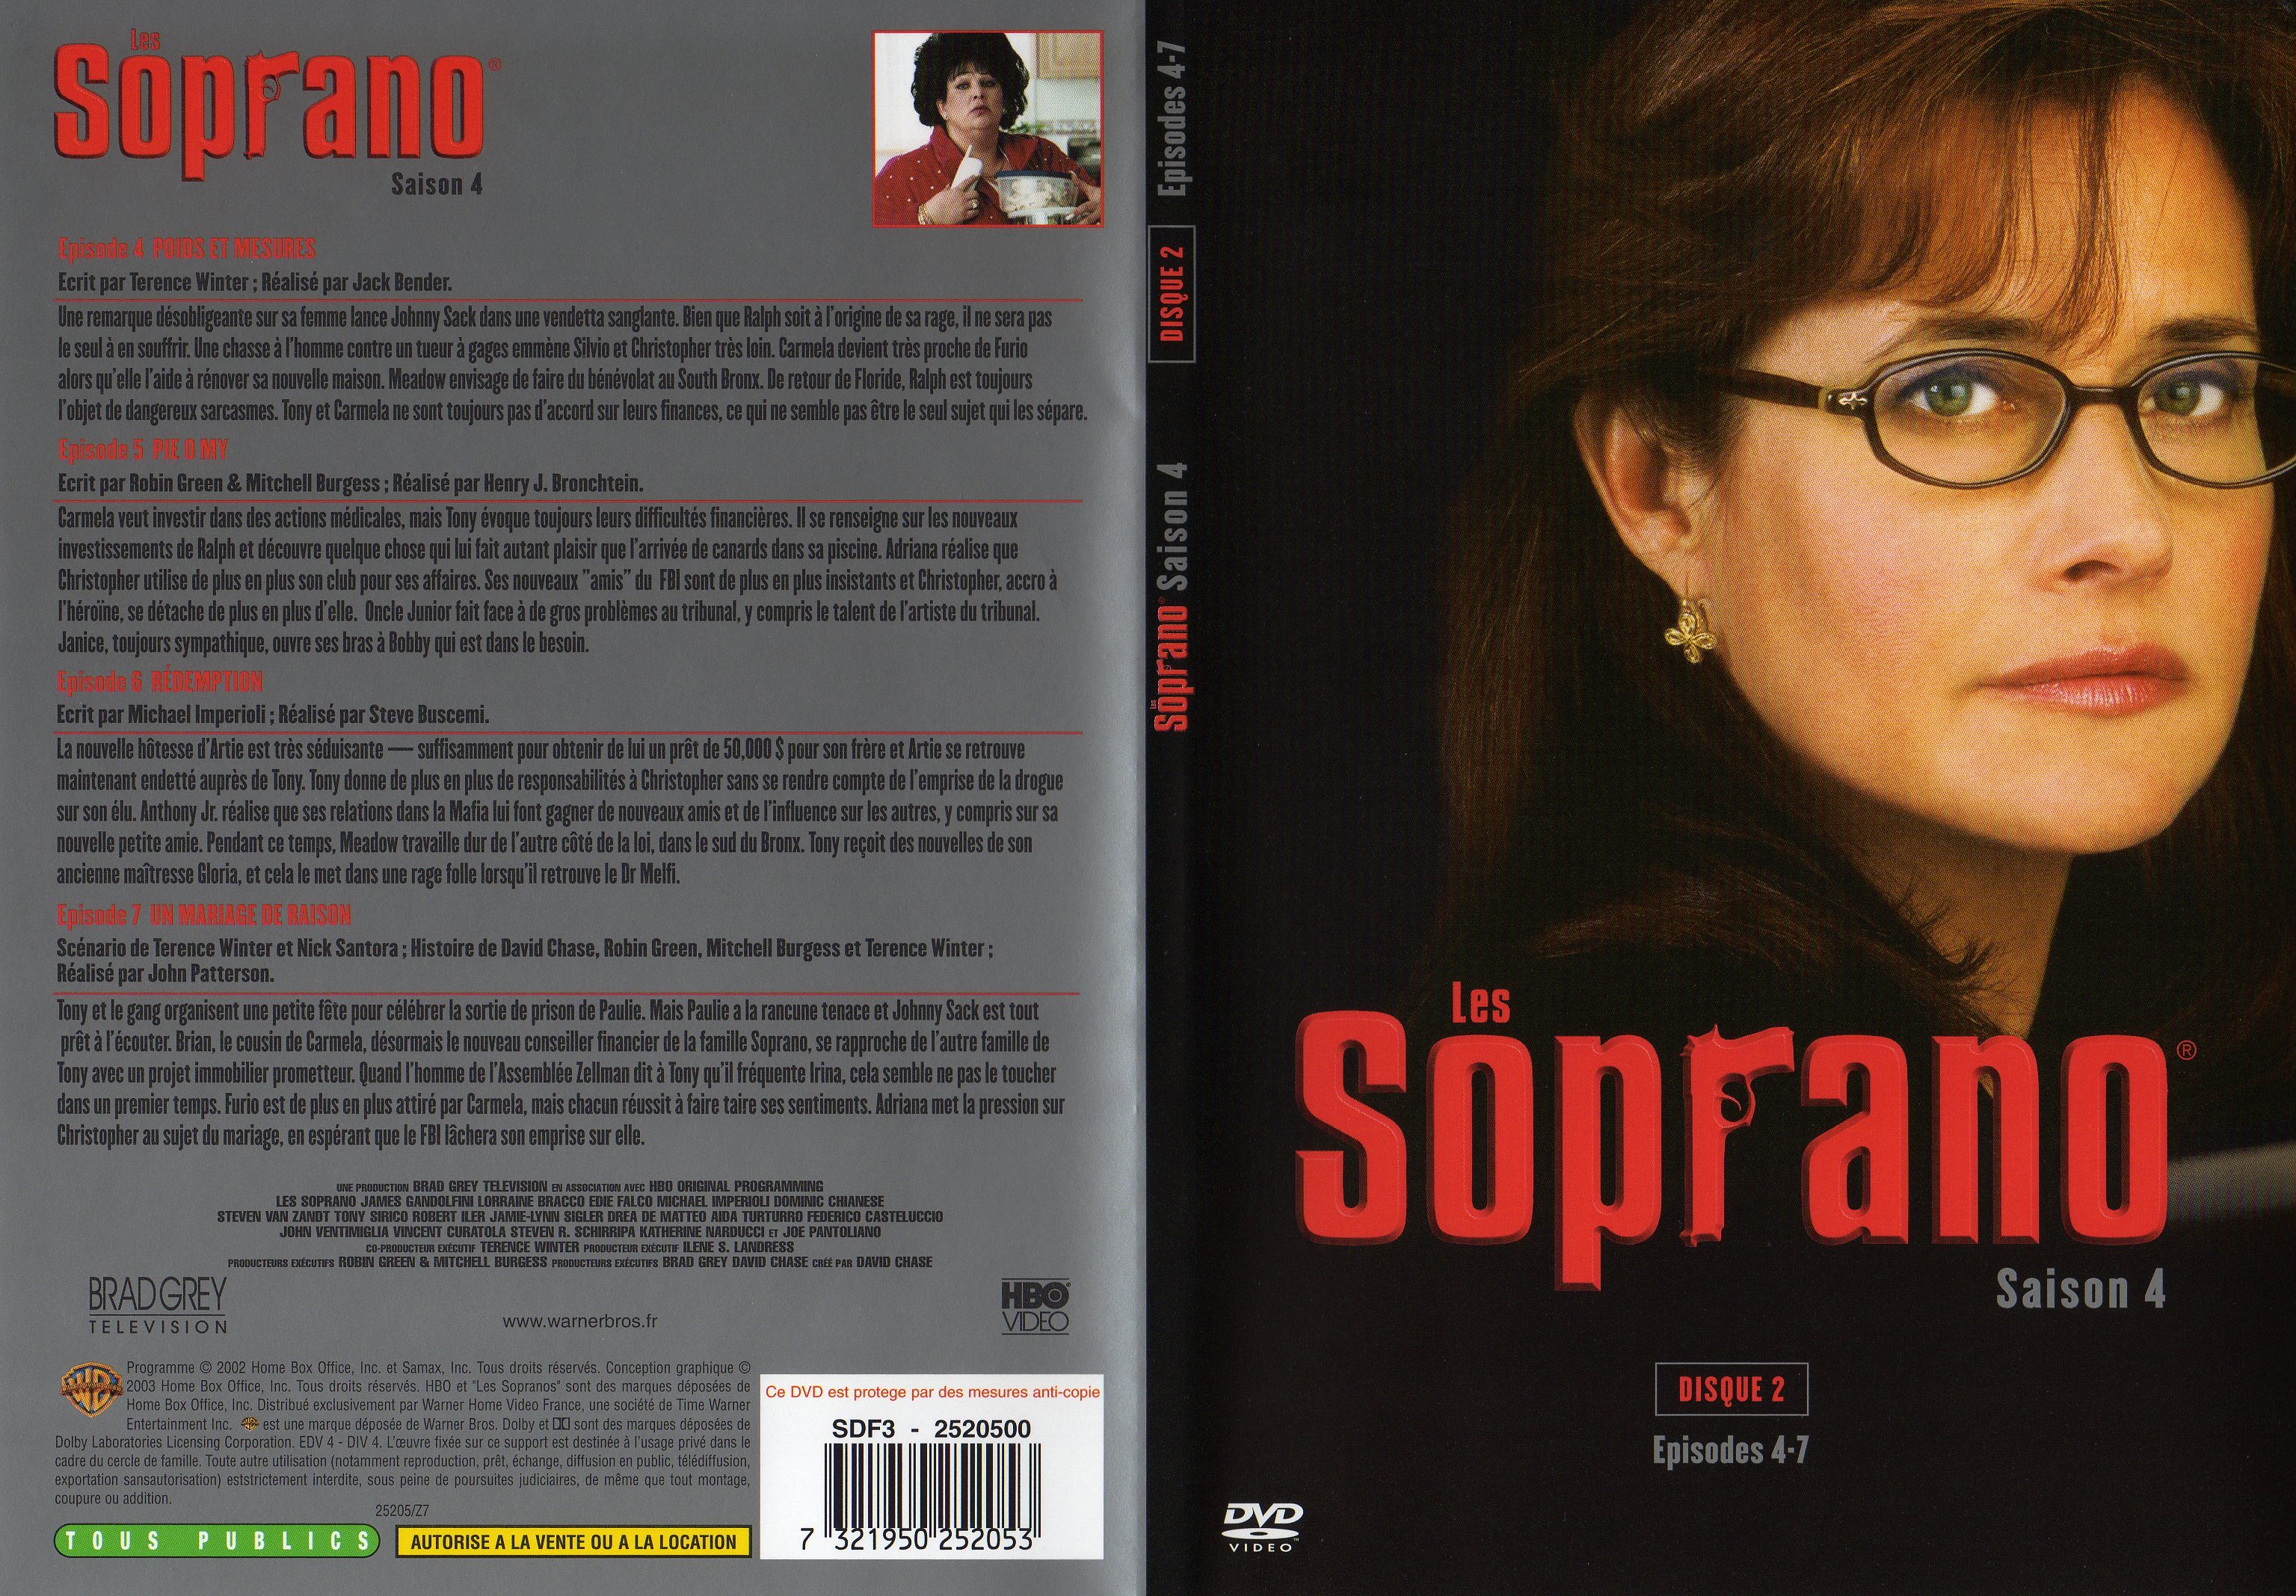 Jaquette DVD Les Soprano saison 4 DVD 2